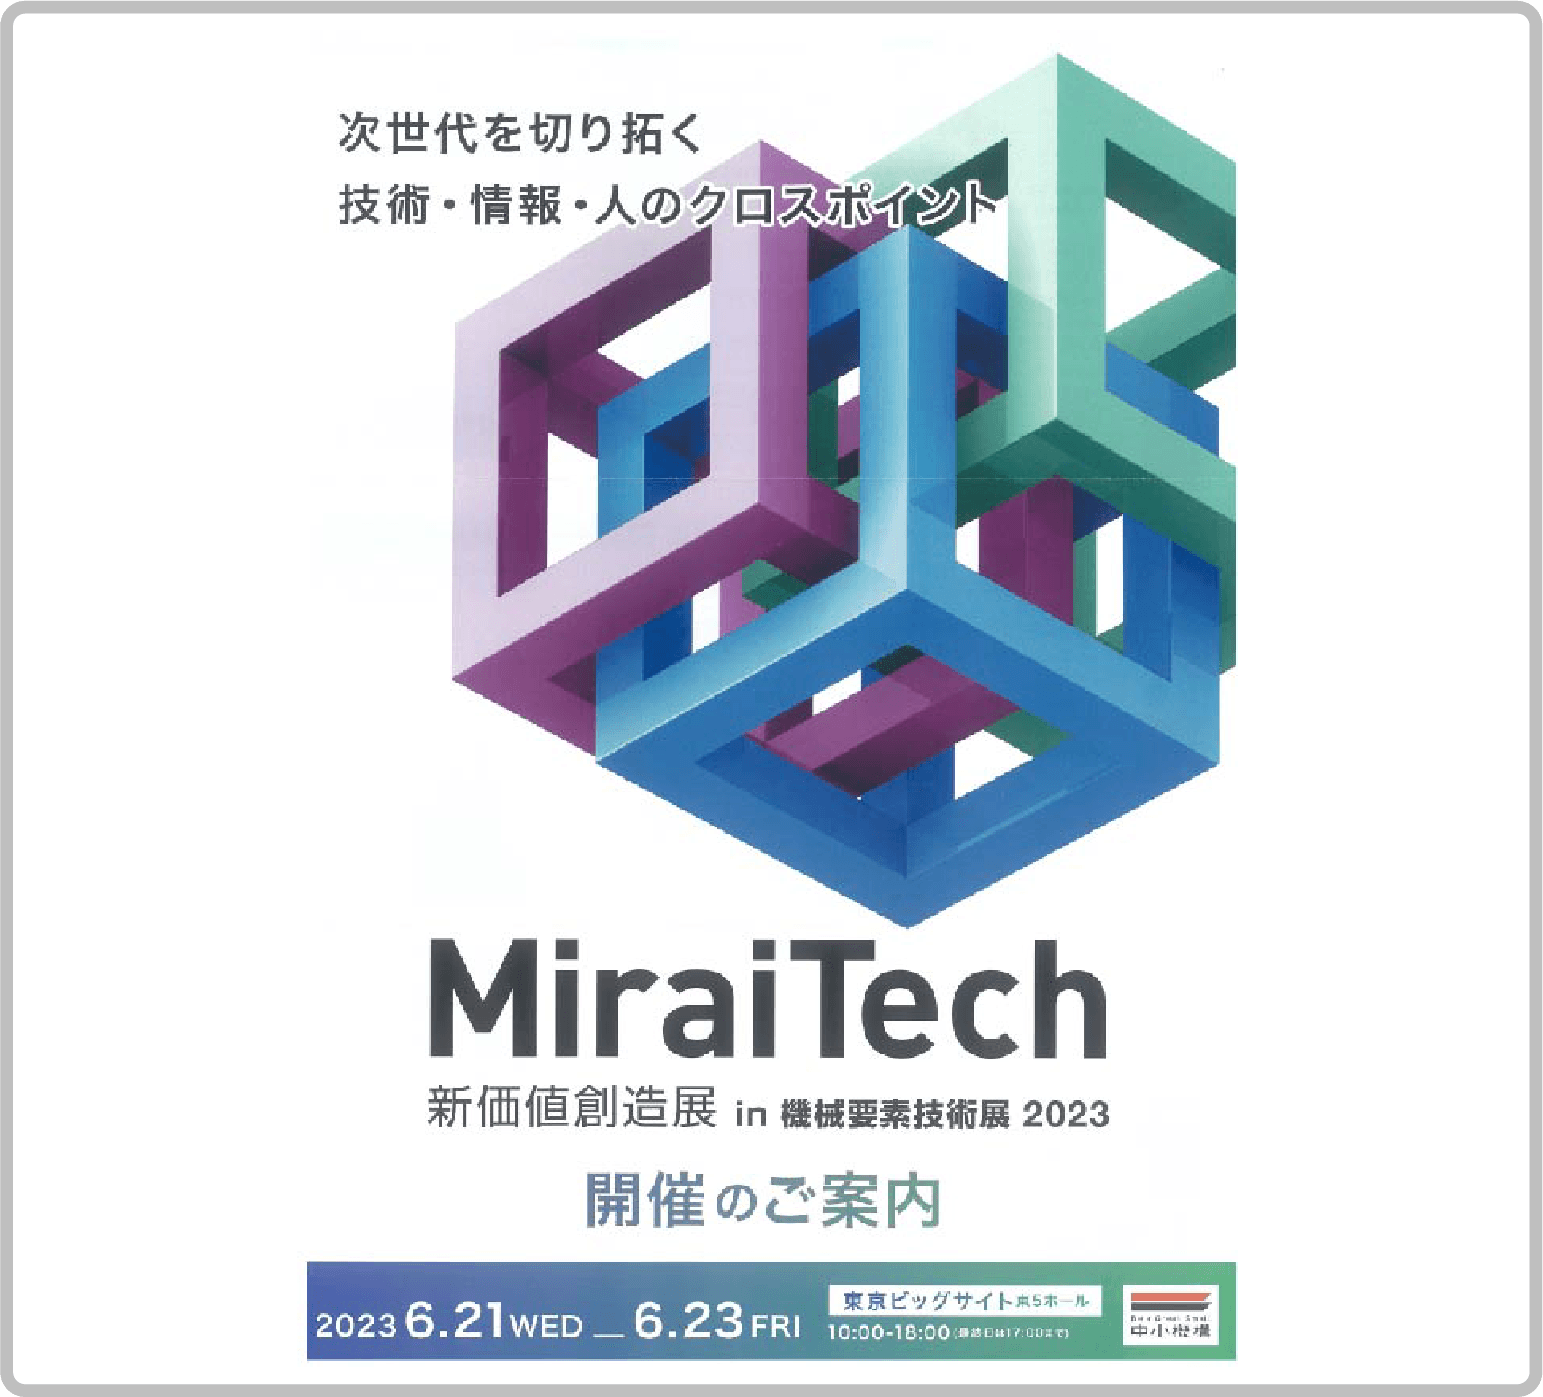 MiraiTech 新価値創造展 in 機械要素技術展2023 チラシ